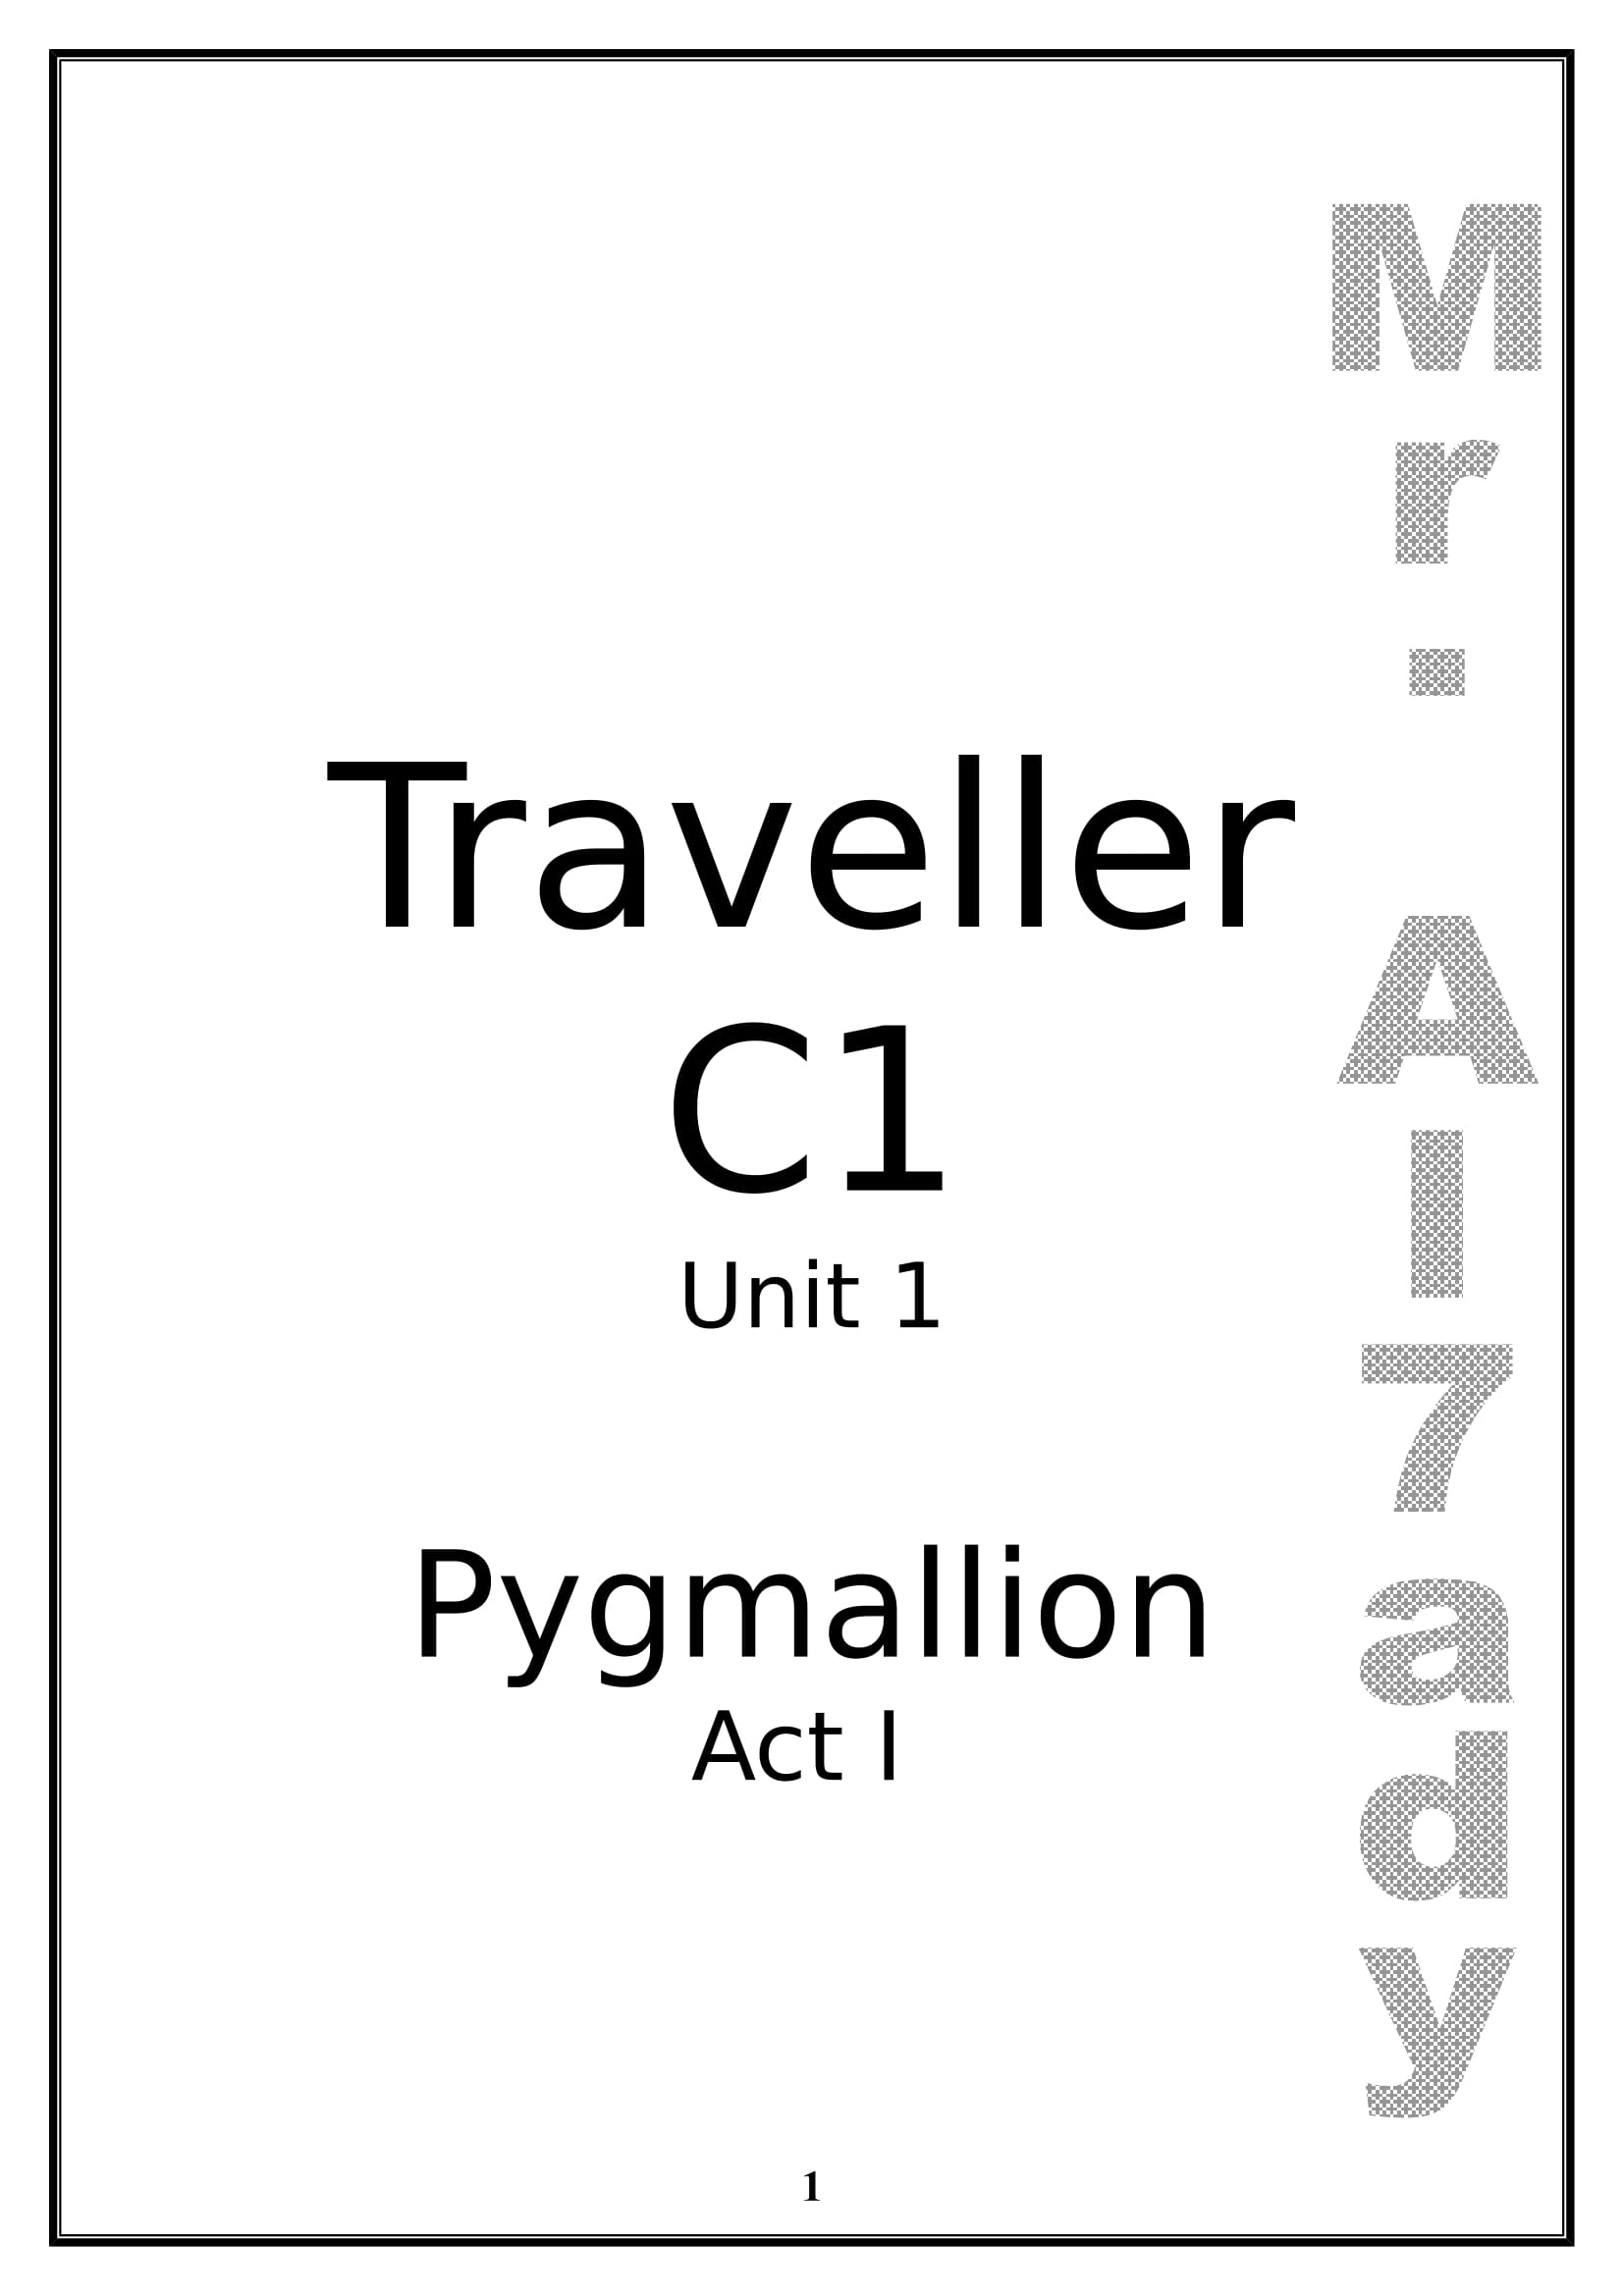 شرح Unit 1 لمنهج traveller C1 فى اللغة الانجليزية للصف الثانى الثانوى اللغات الترم الاول